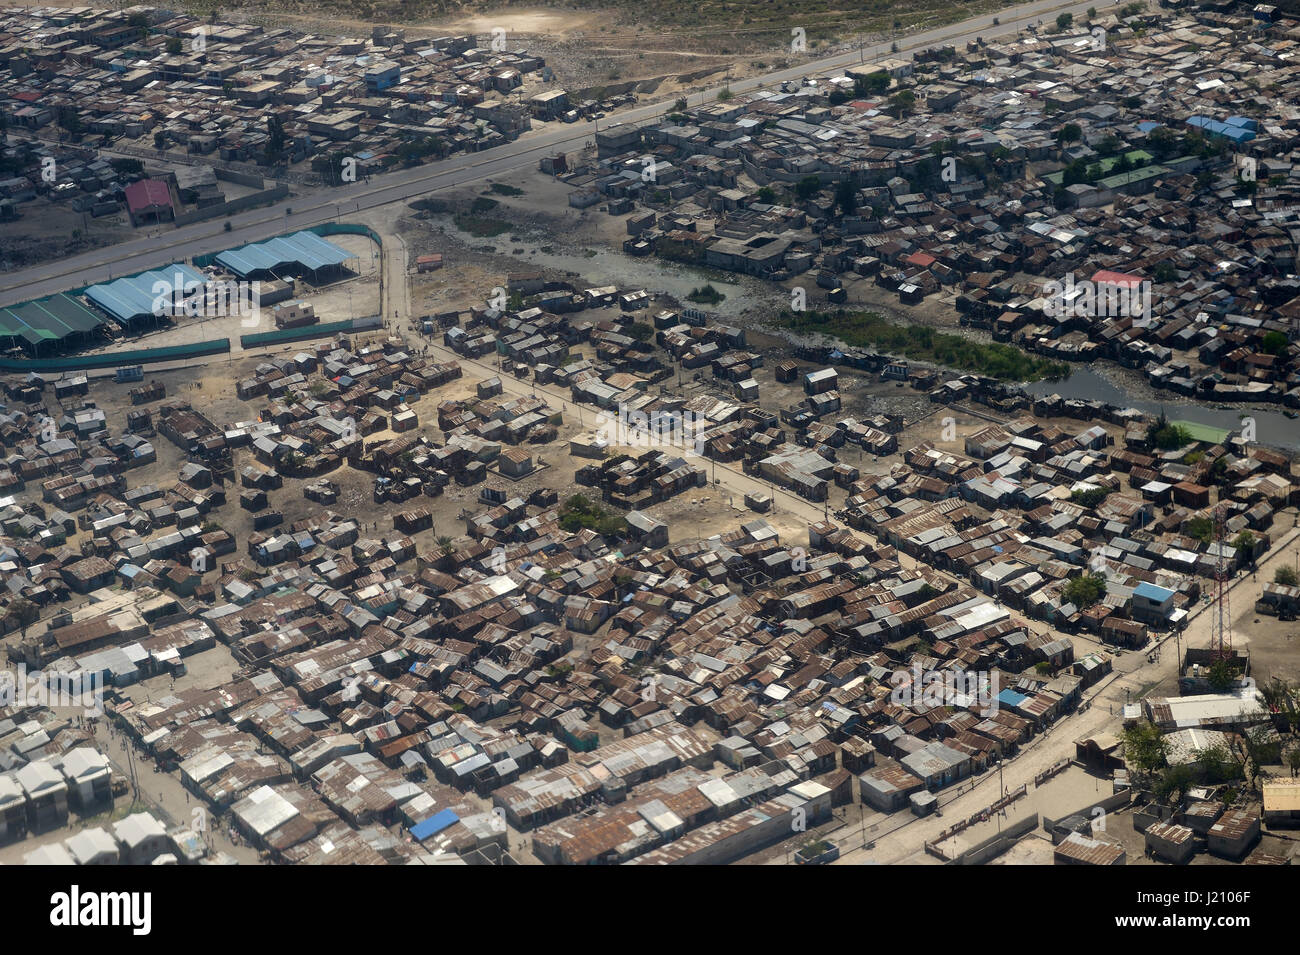 Haïti, Port-au-Prince, bidonville de Cité Soleil, vue aérienne Photo Stock  - Alamy